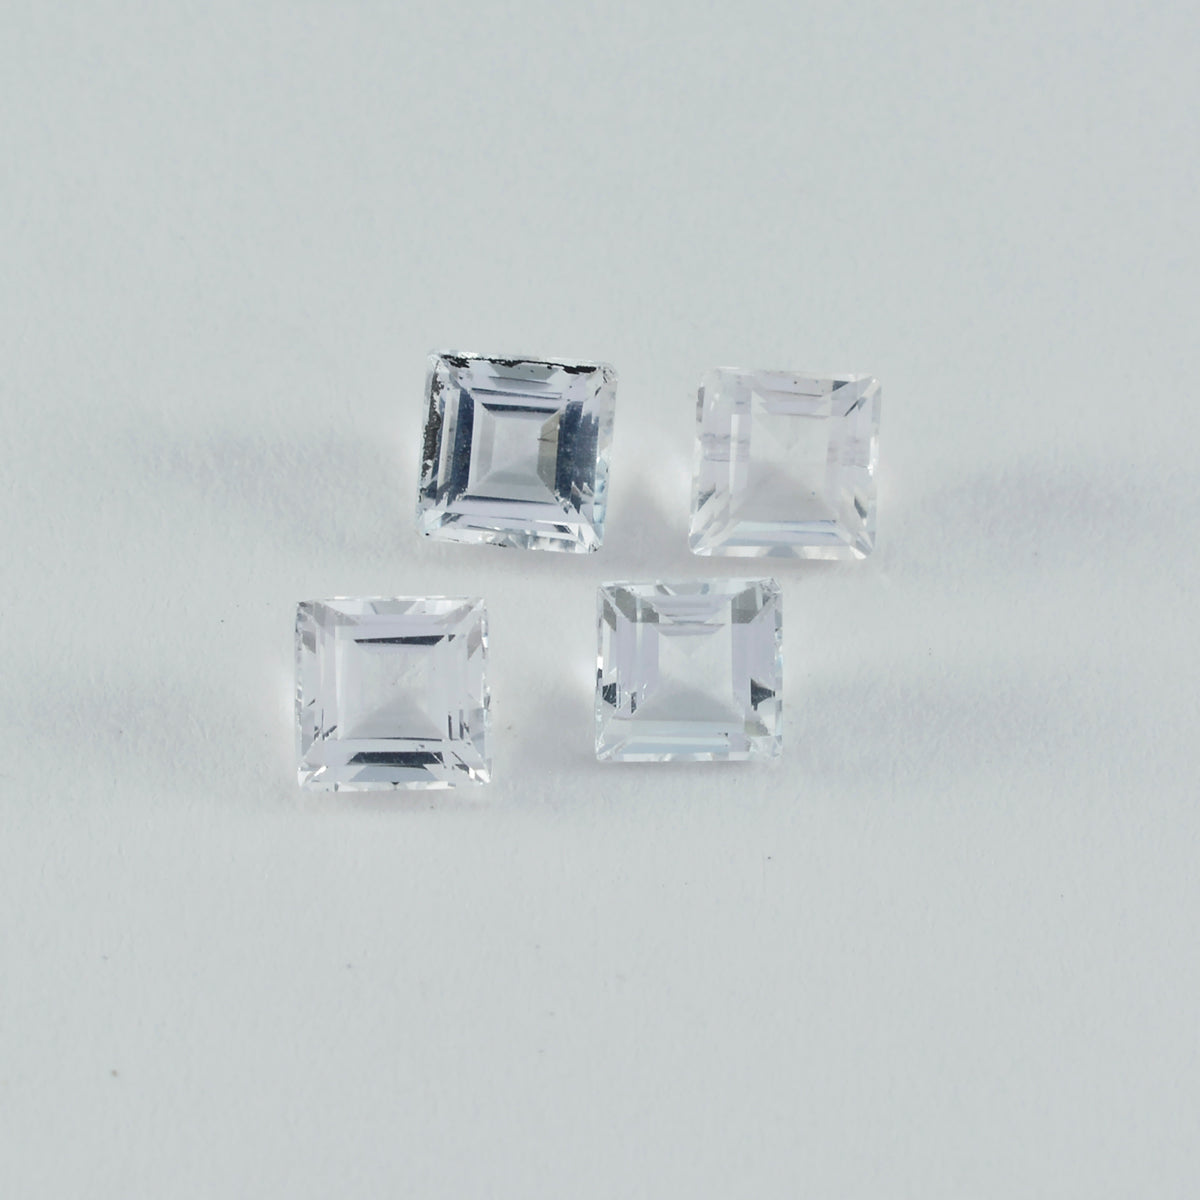 Riyogems 1PC wit kristalkwarts gefacetteerd 7x7 mm vierkante vorm mooie kwaliteit losse edelsteen